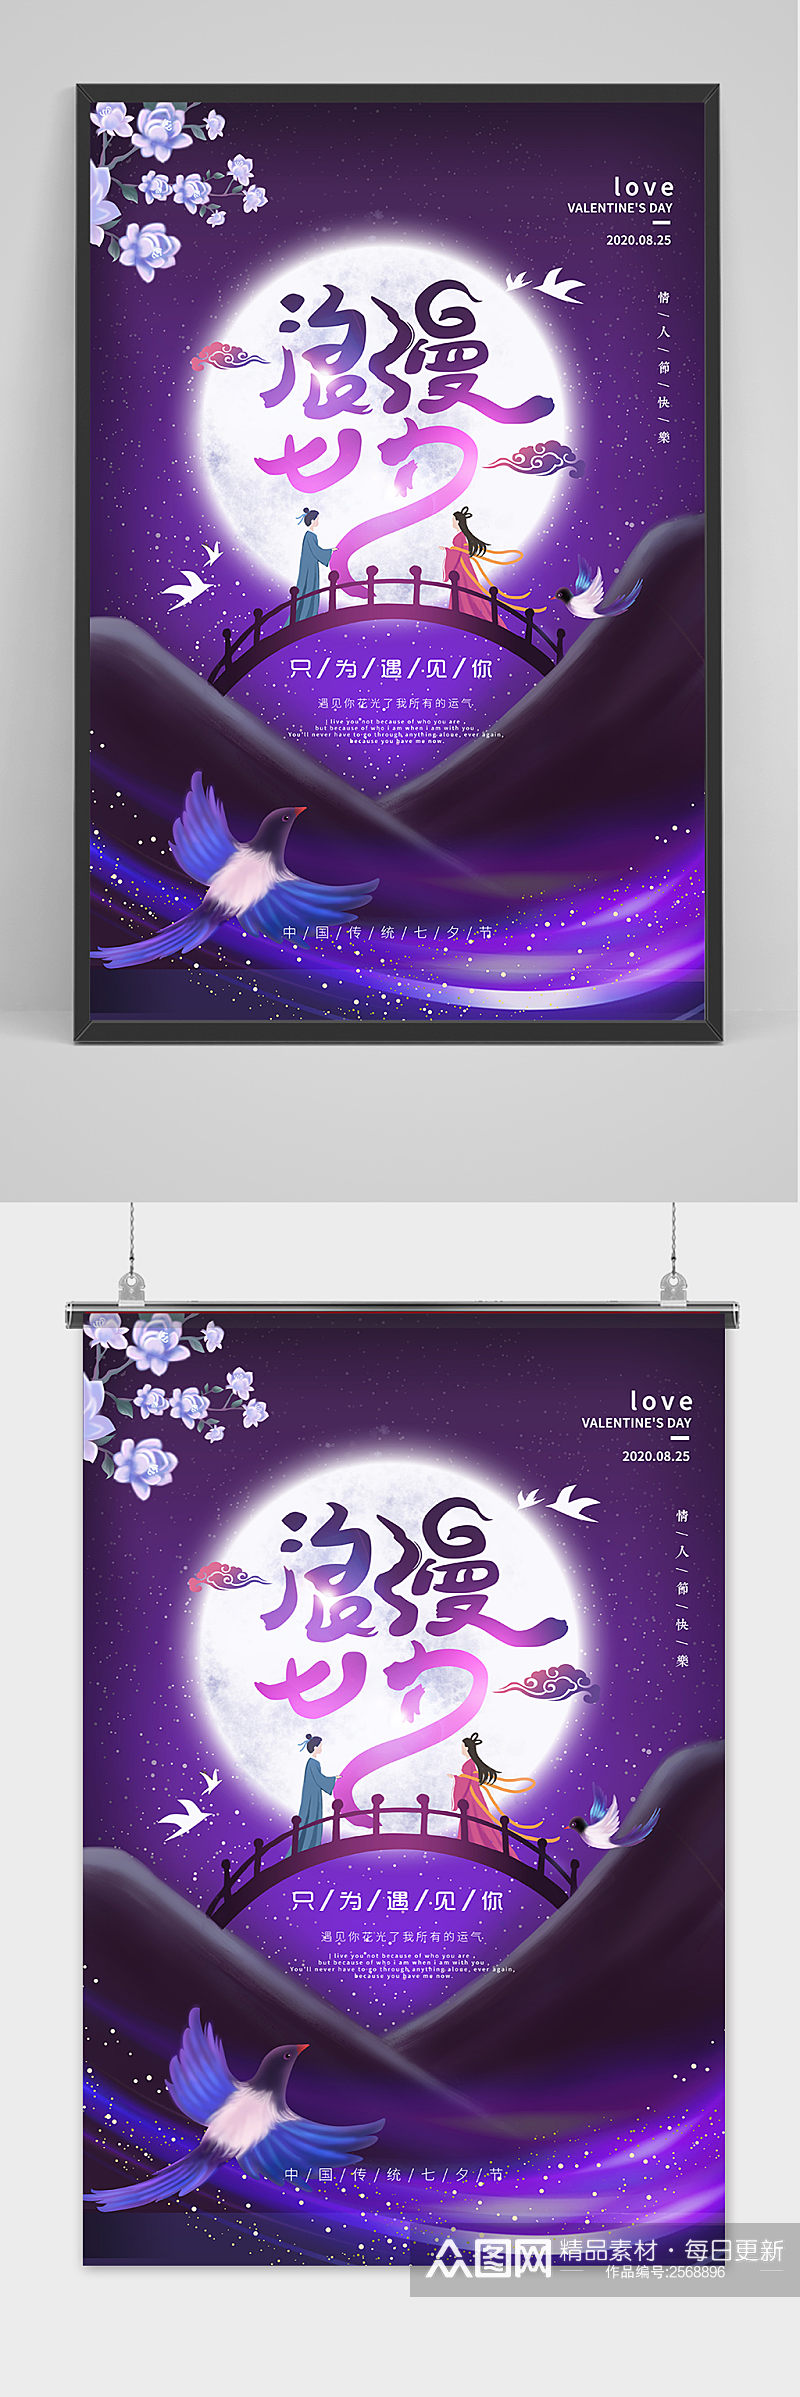 紫色浪漫中国传统节日七夕节海报素材